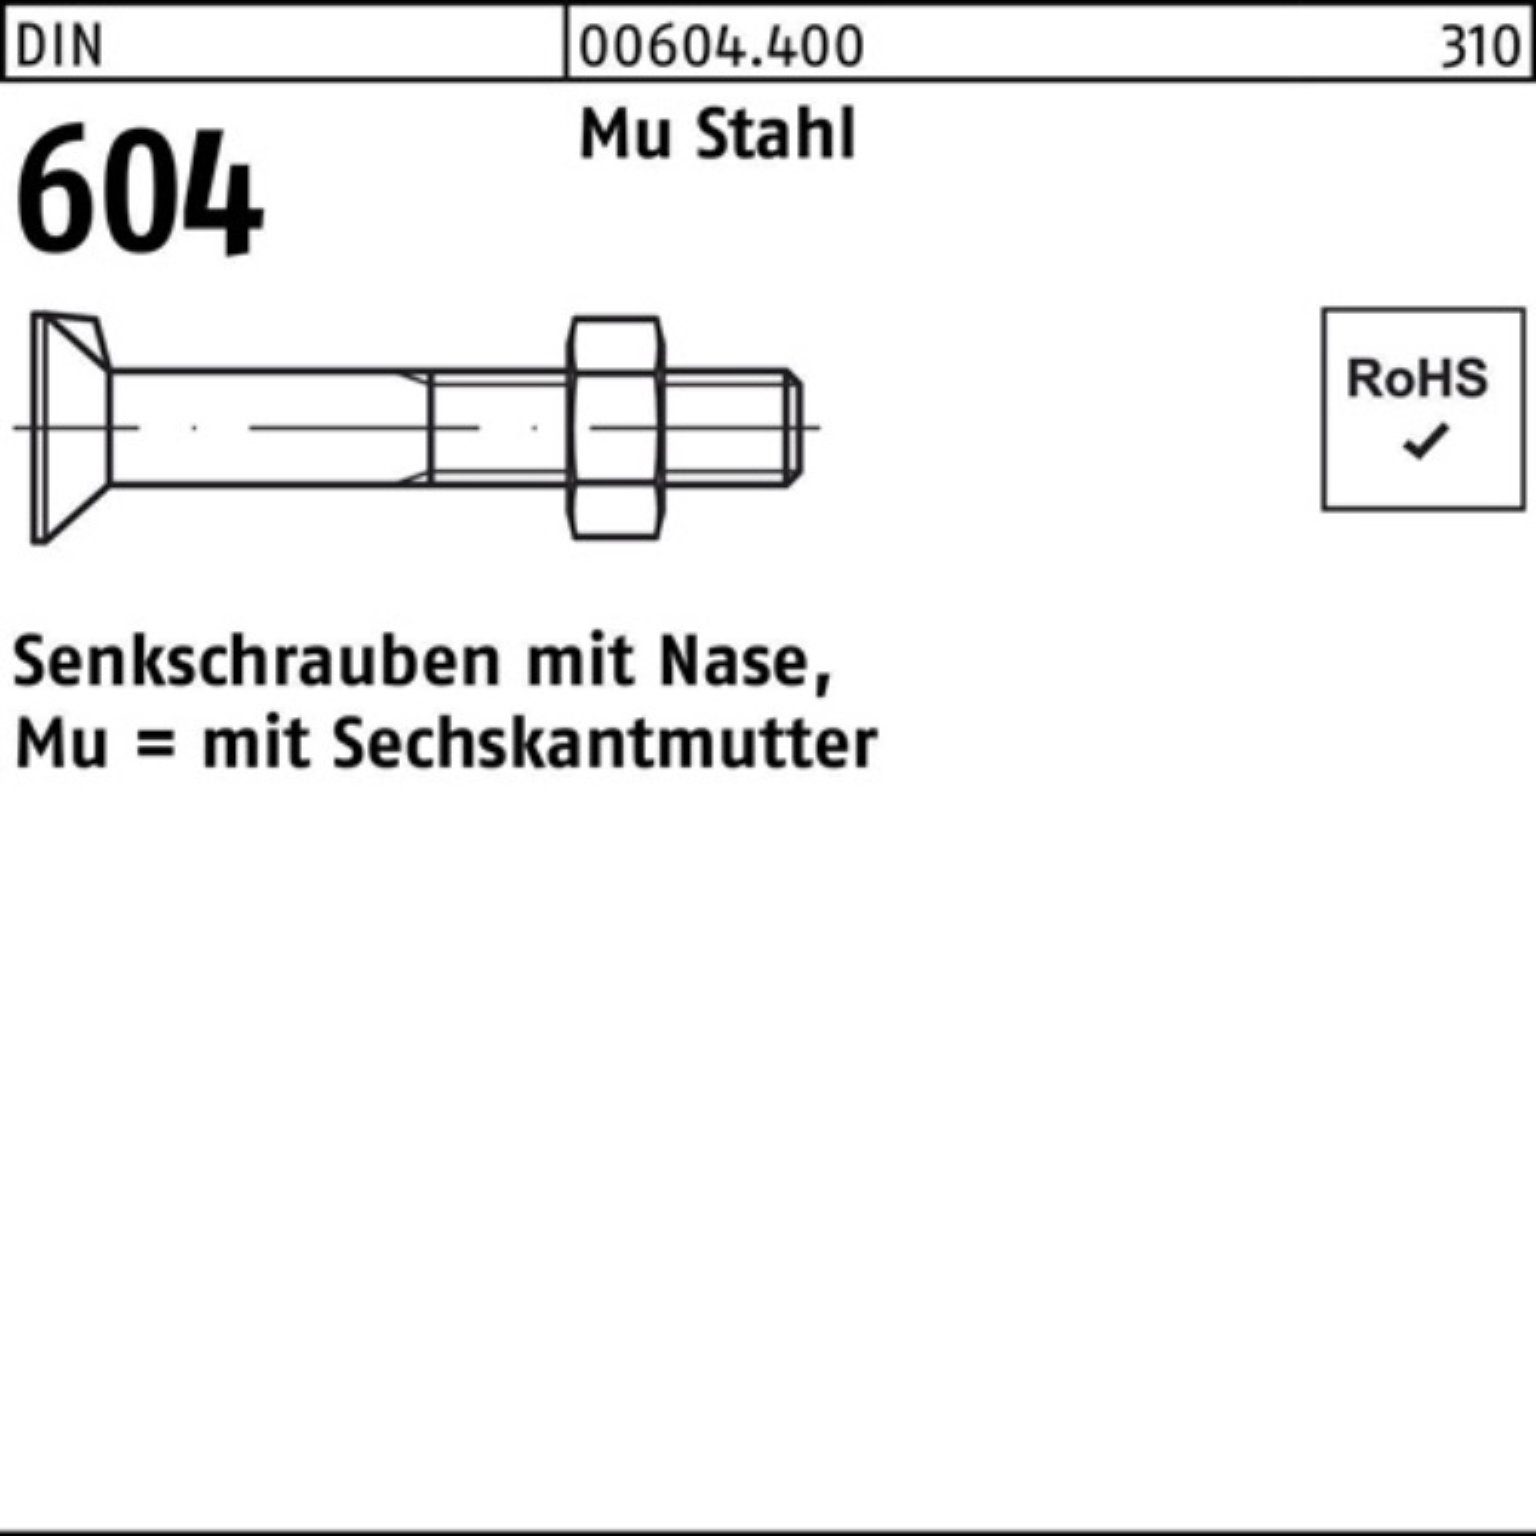 Senkschraube Senkschraube 4.6 DIN 604 5 Nase/6-ktmutter Mu 50 100er M16x Pack Reyher Stahl